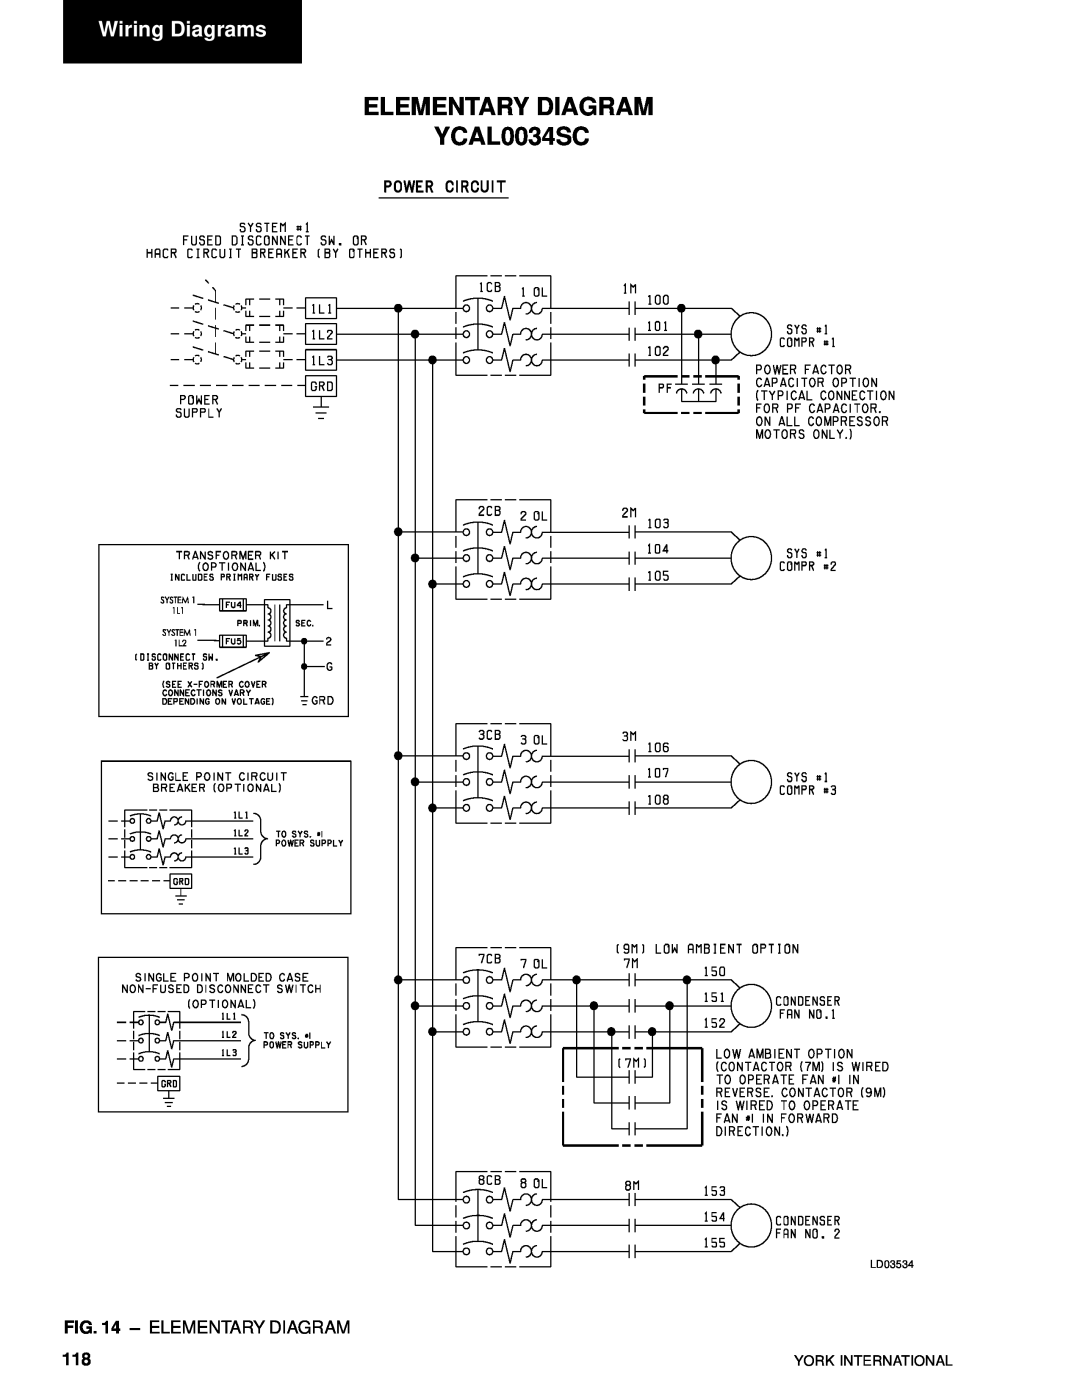 York YCAL0014SC, YCAL0080SC manual ELEMENTARY DIAGRAM YCAL0034SC, Wiring Diagrams, Elementary Diagram, LD03534 